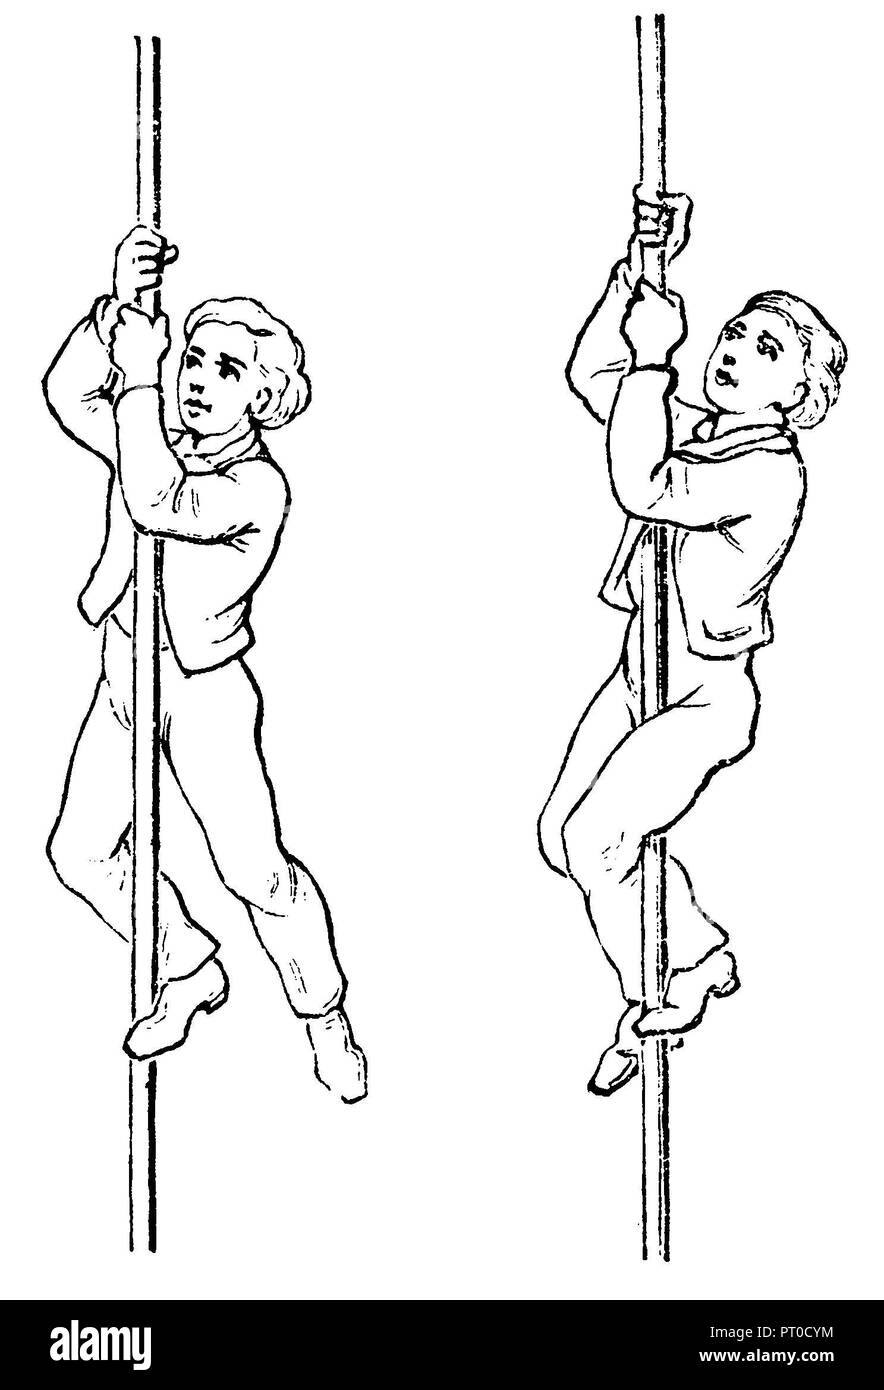 La gymnastique, l'Escalade : escalade avec une jambe (gauche), avec les deux jambes (droite), 1890 Banque D'Images